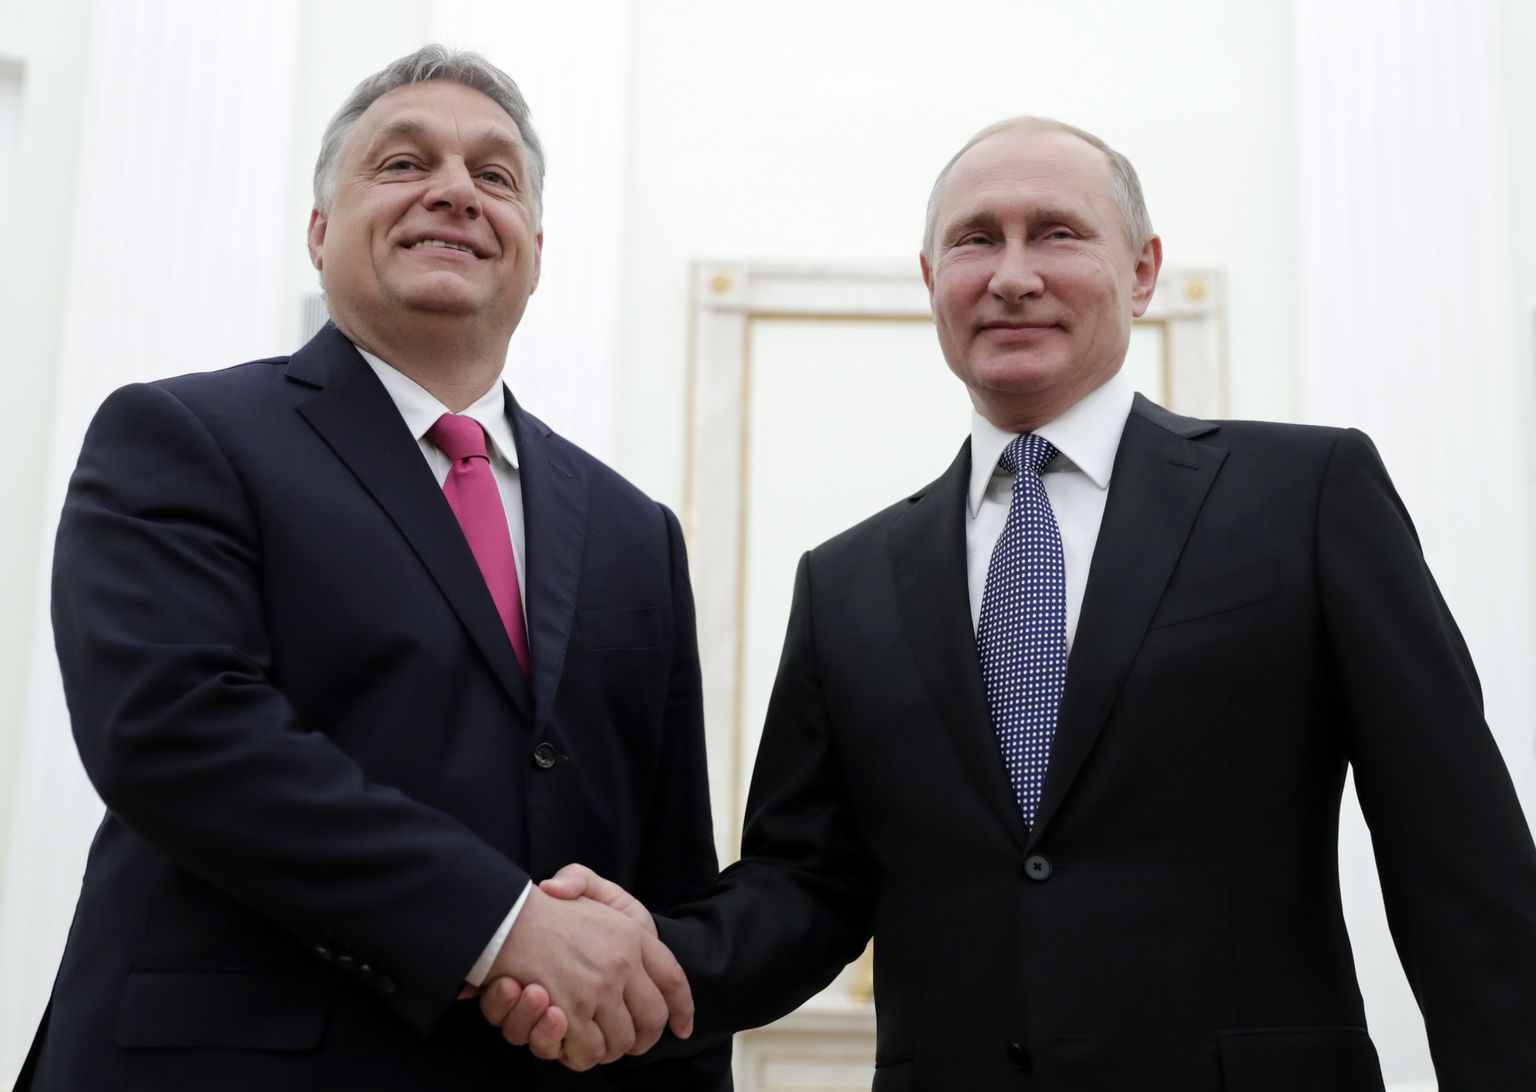 Putini ja Orbáni kohtumine 15. juulil 2018 Moskvas.